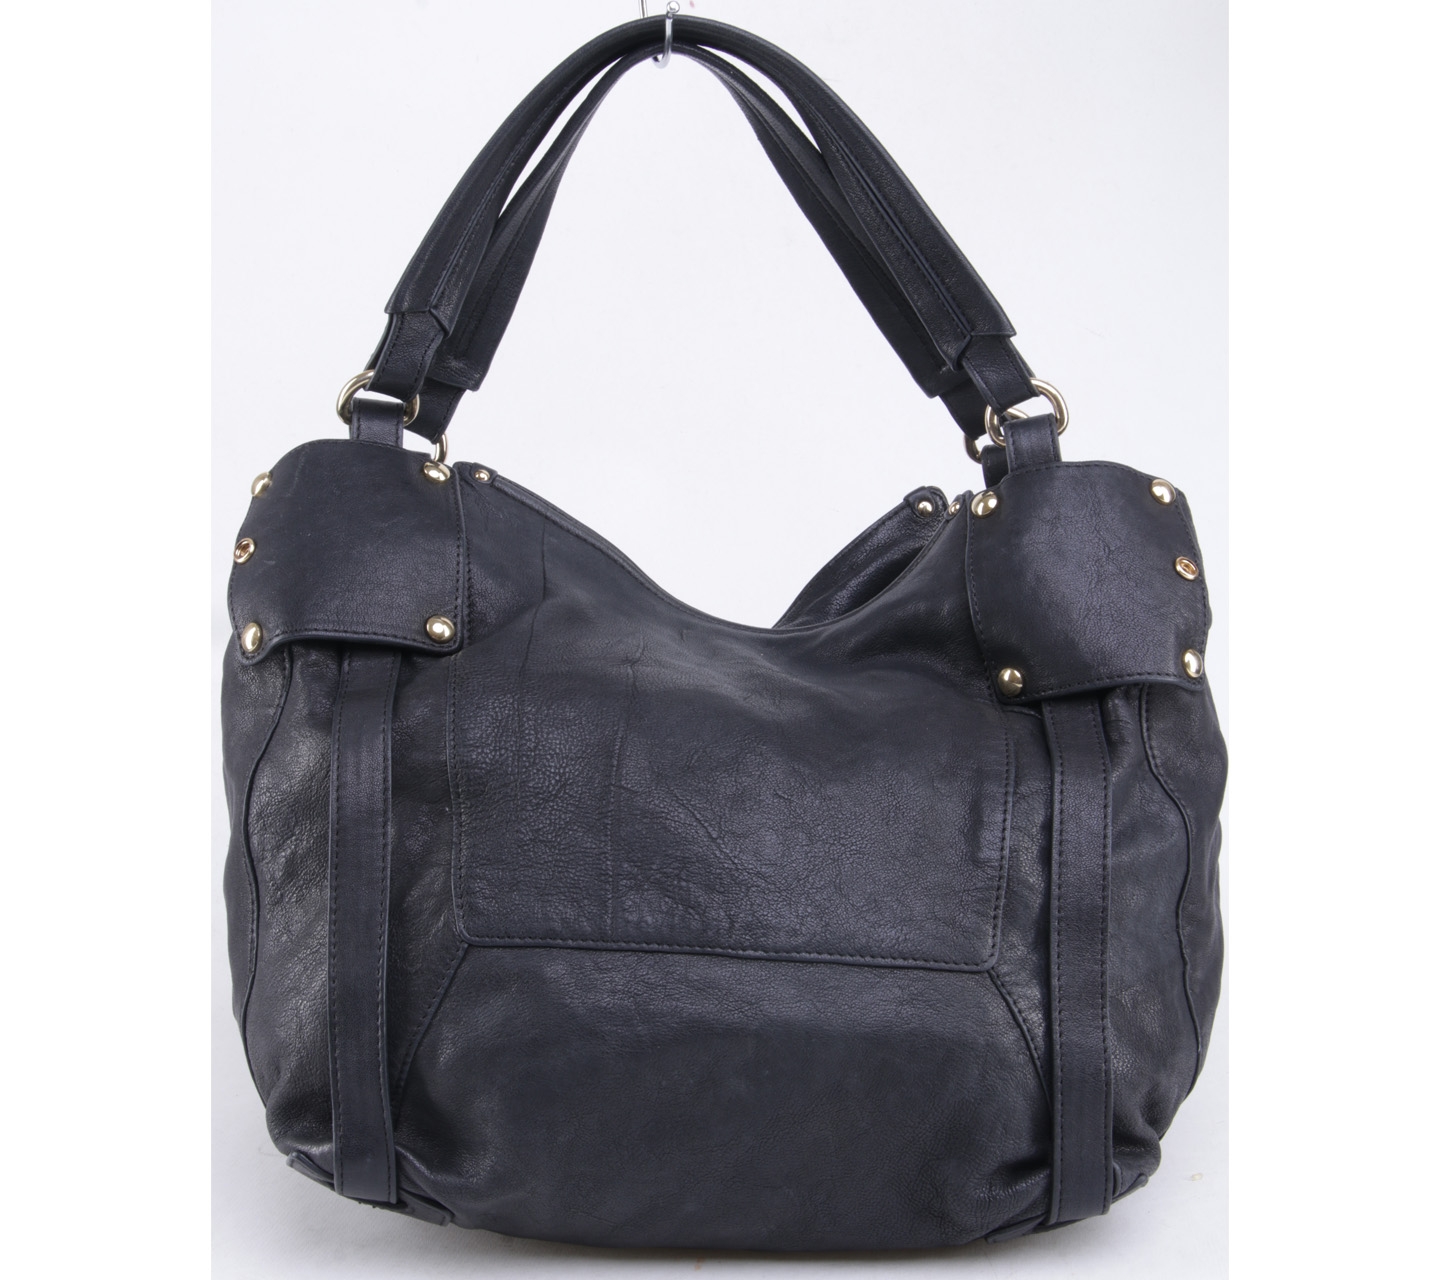 Kooba Black Leather Handbag